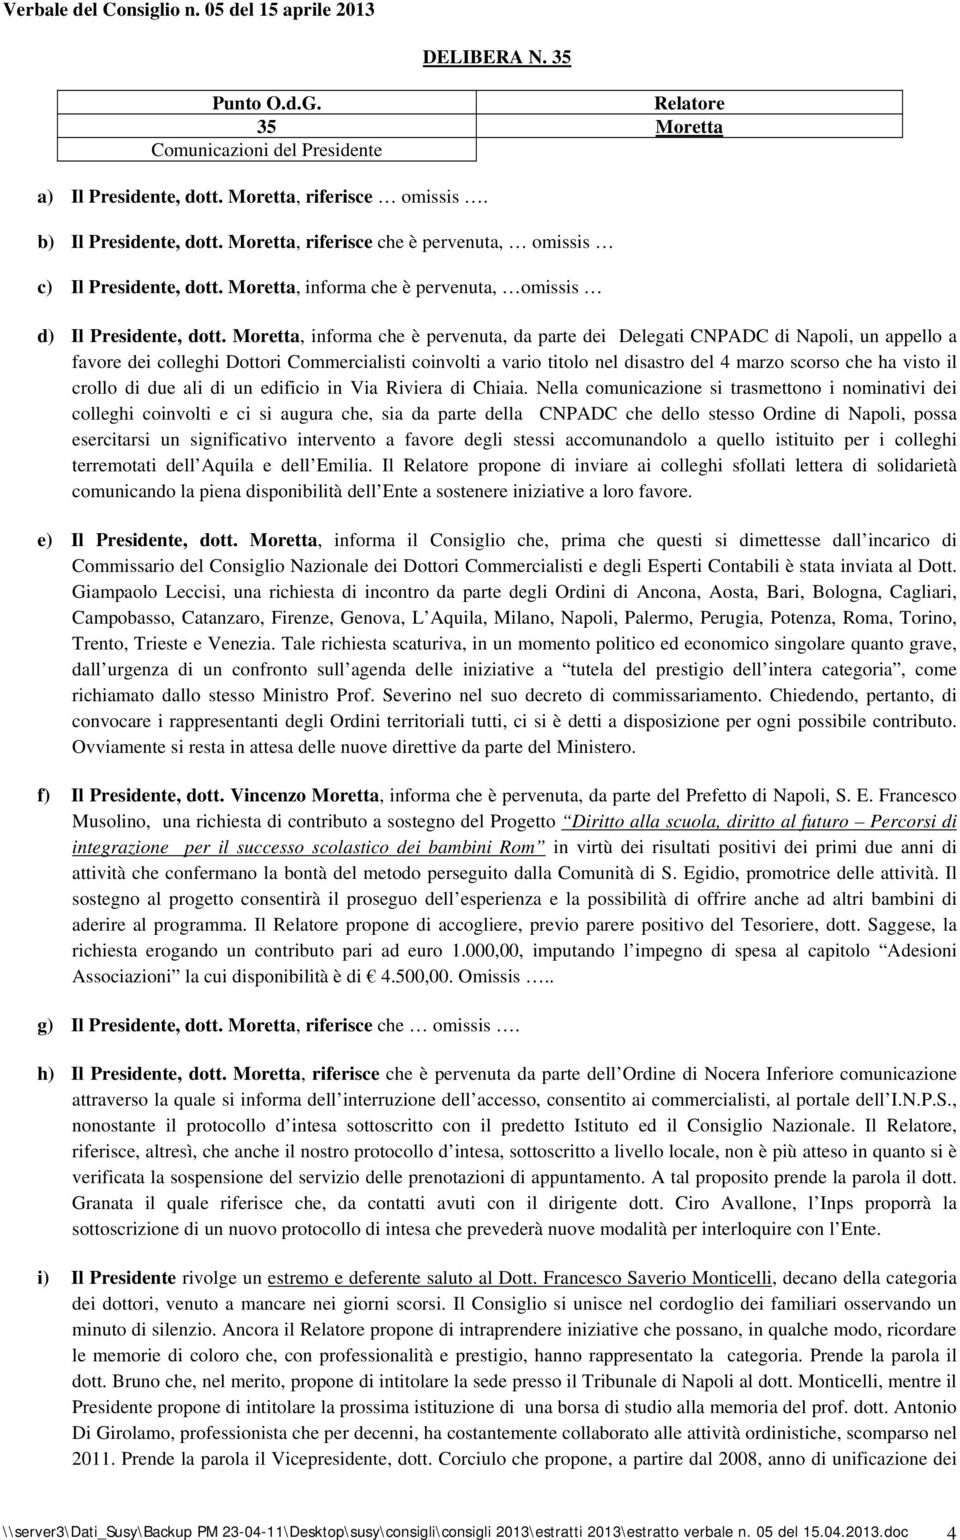 Moretta, informa che è pervenuta, da parte dei Delegati CNPADC di Napoli, un appello a favore dei colleghi Dottori Commercialisti coinvolti a vario titolo nel disastro del marzo scorso che ha visto